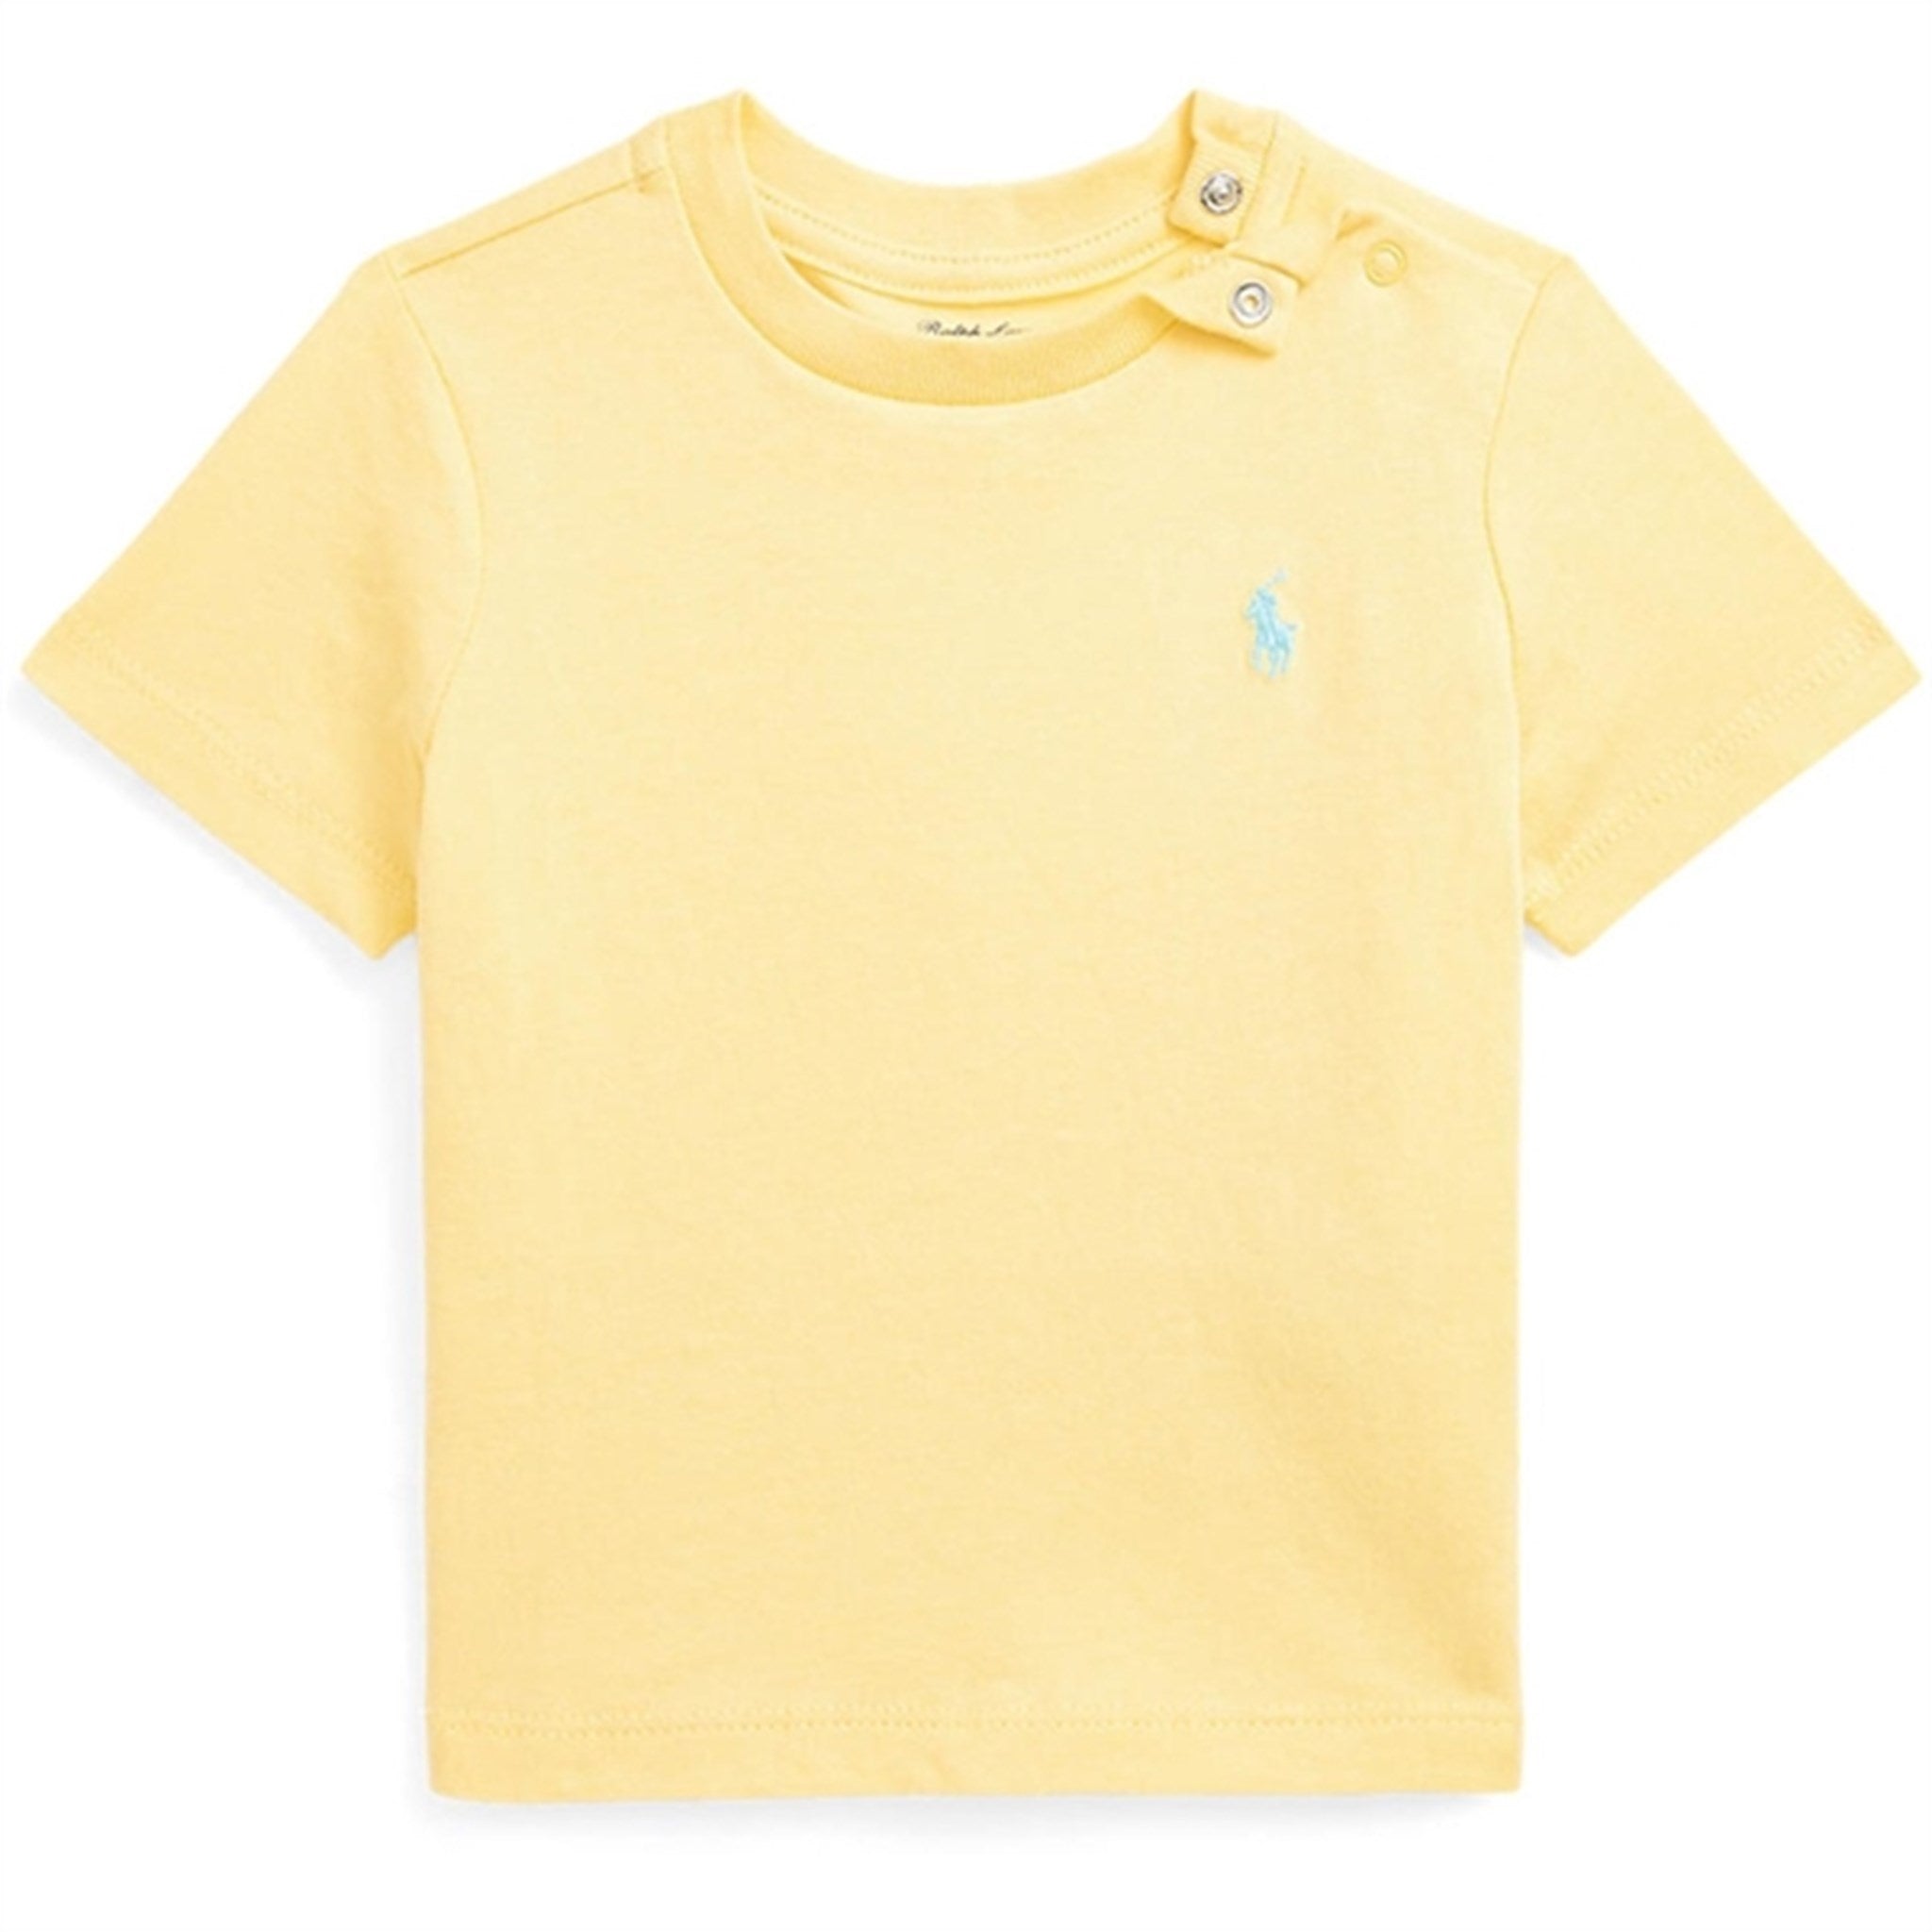 Ralph Lauren Baby T-Shirt Yellow